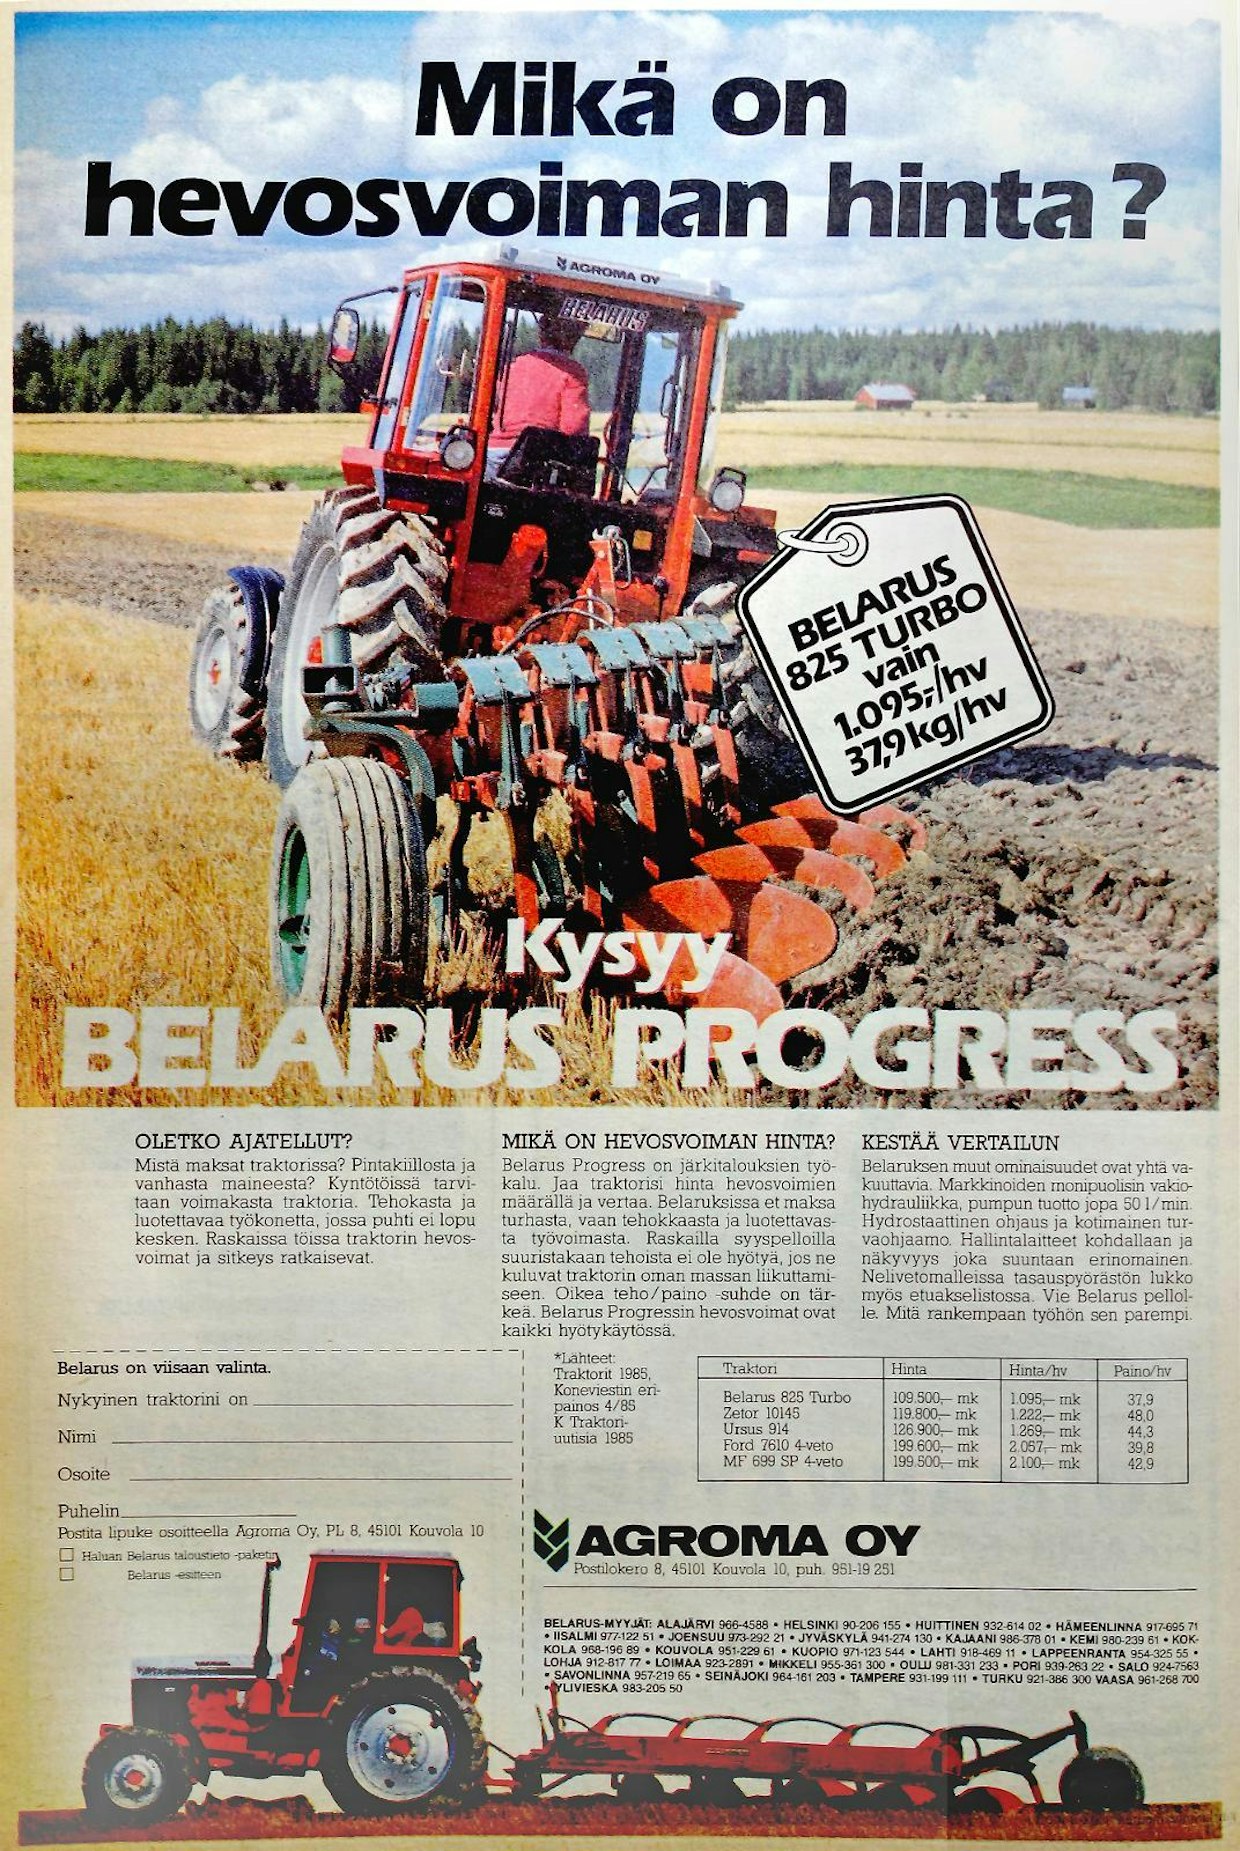 Belaruksen markkinoinnissa keksittiin vuonna 1985 vertailla Belarus 825 Turbon hevosvoiman hintaa eräisiin muihin markkinoilla olleisiin traktorimalleihin. Belarus 825 Turbon hinta oli 109 500 mk ja hevosvoiman hinnaksi tuli 1 095 mk. Tämä Ilmoitus on julkaistu Koneviestissä 17/1985.